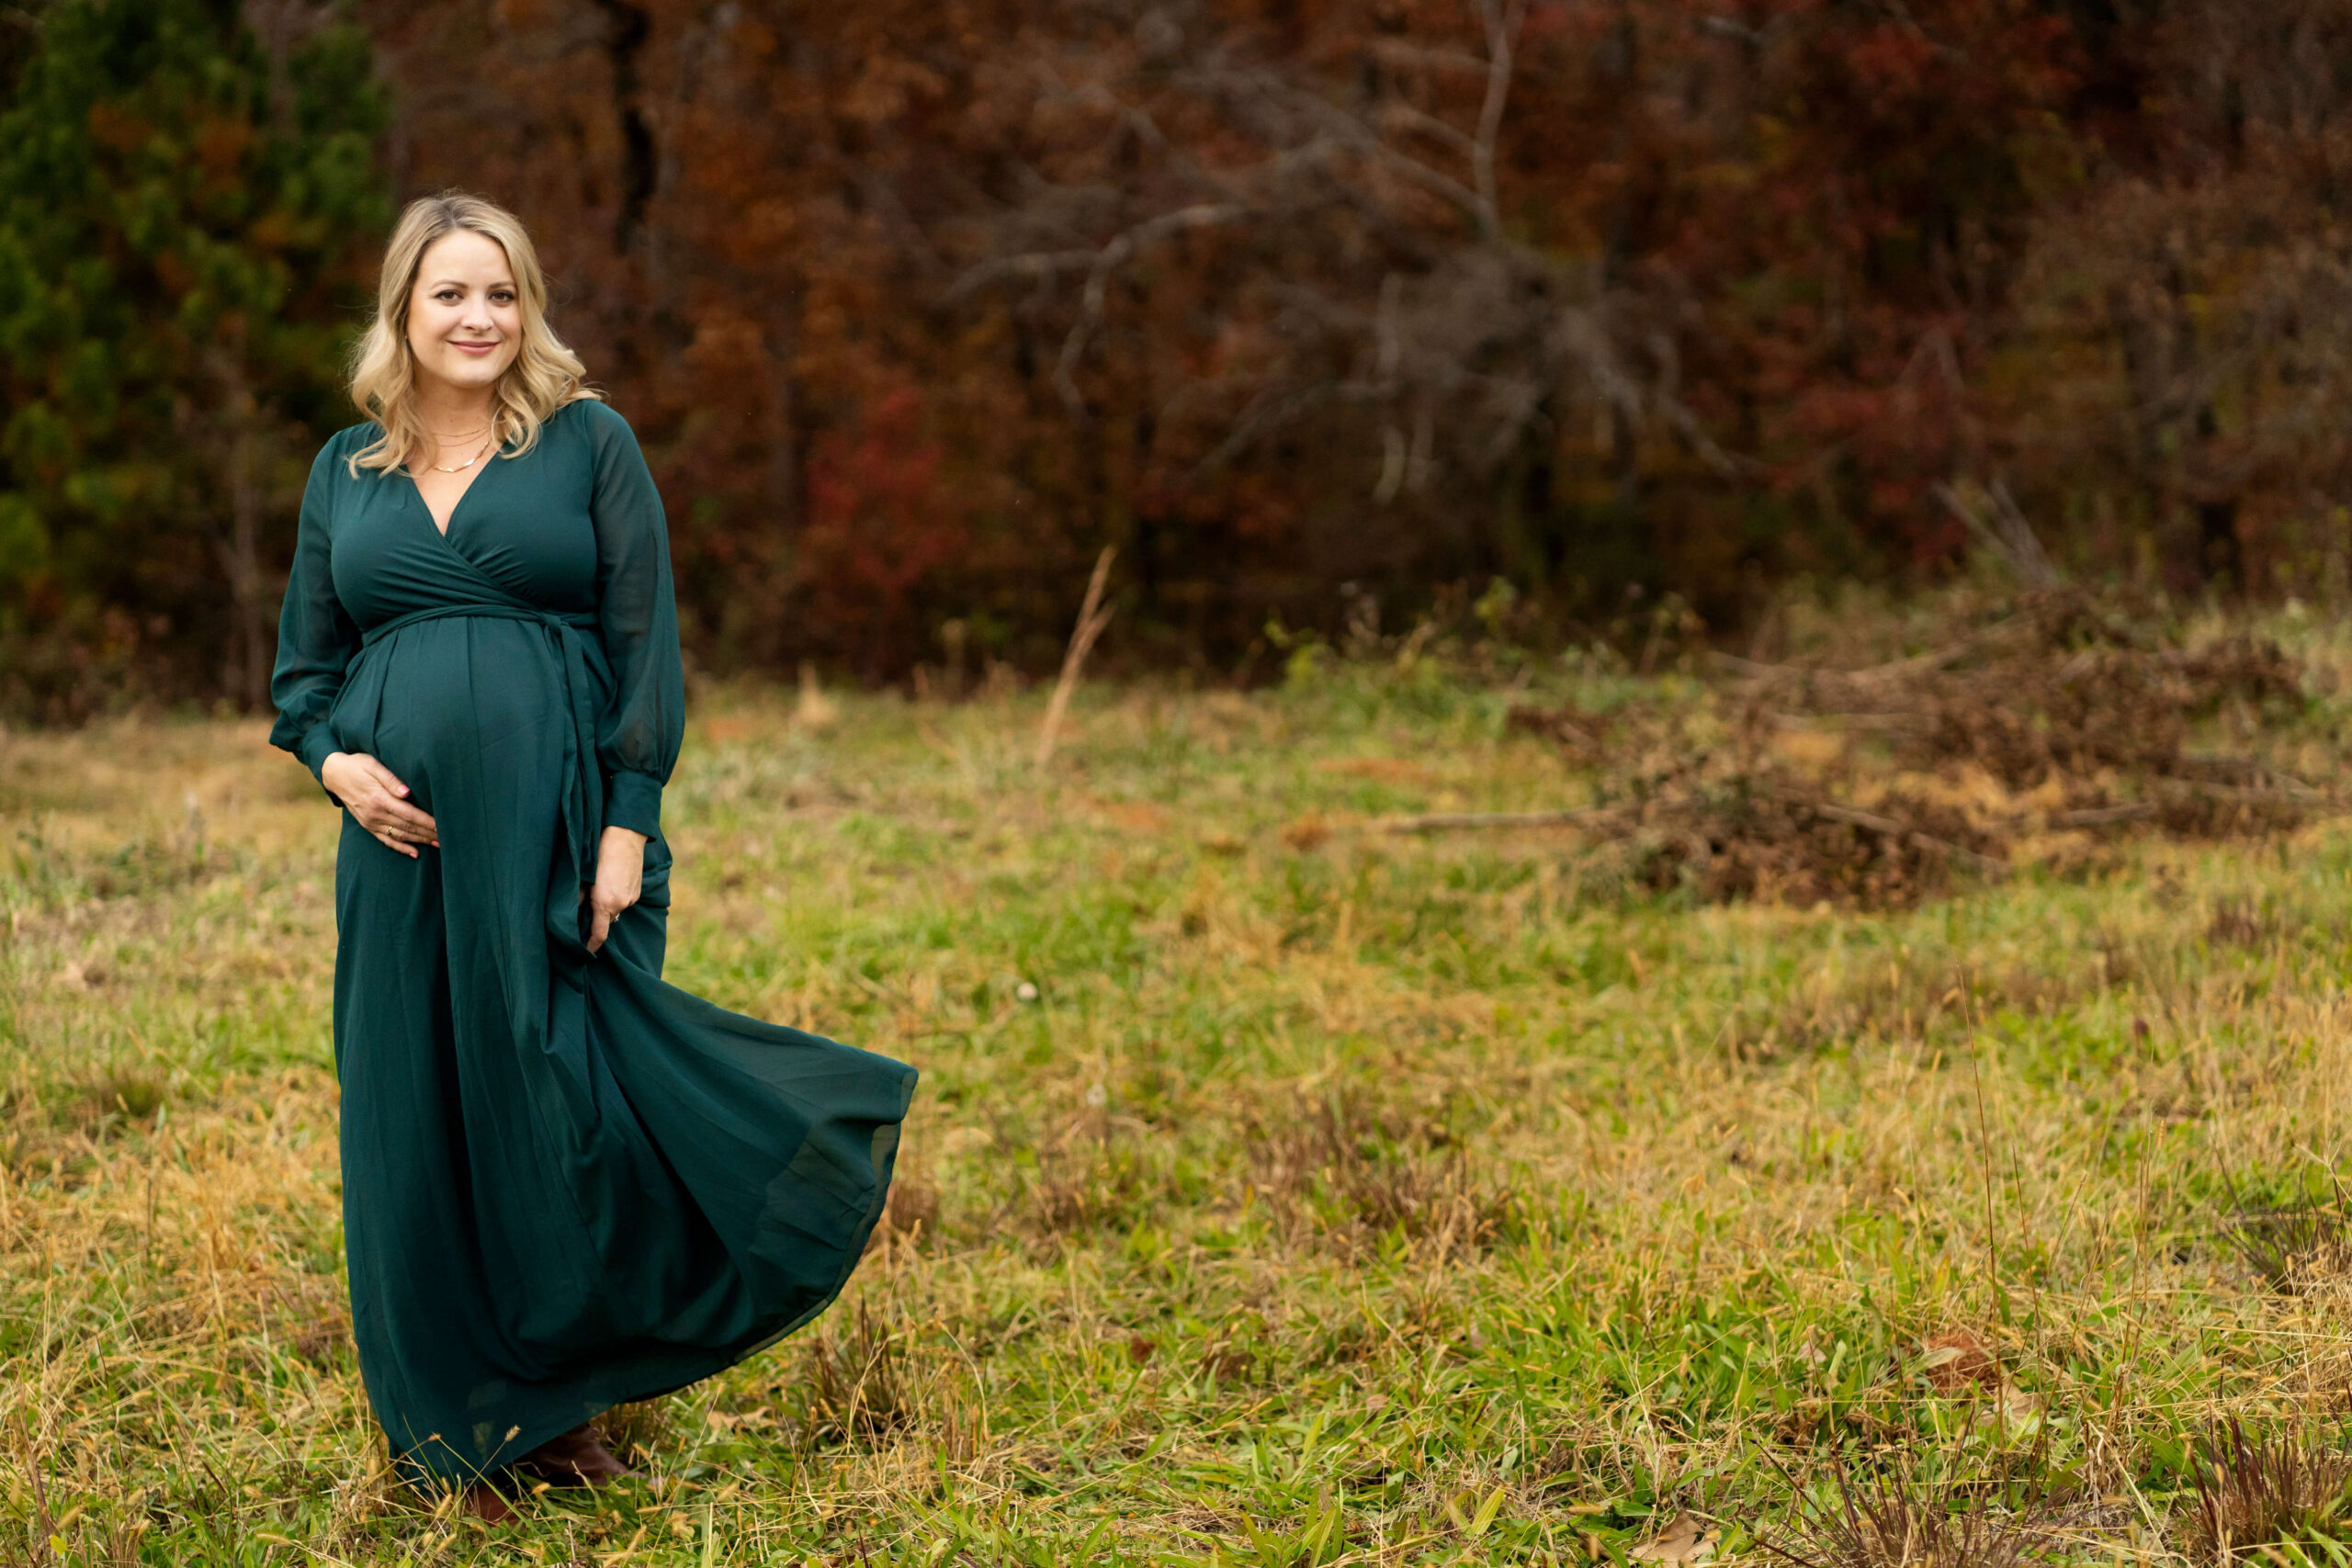 Pregnant woman in long green dress in field.